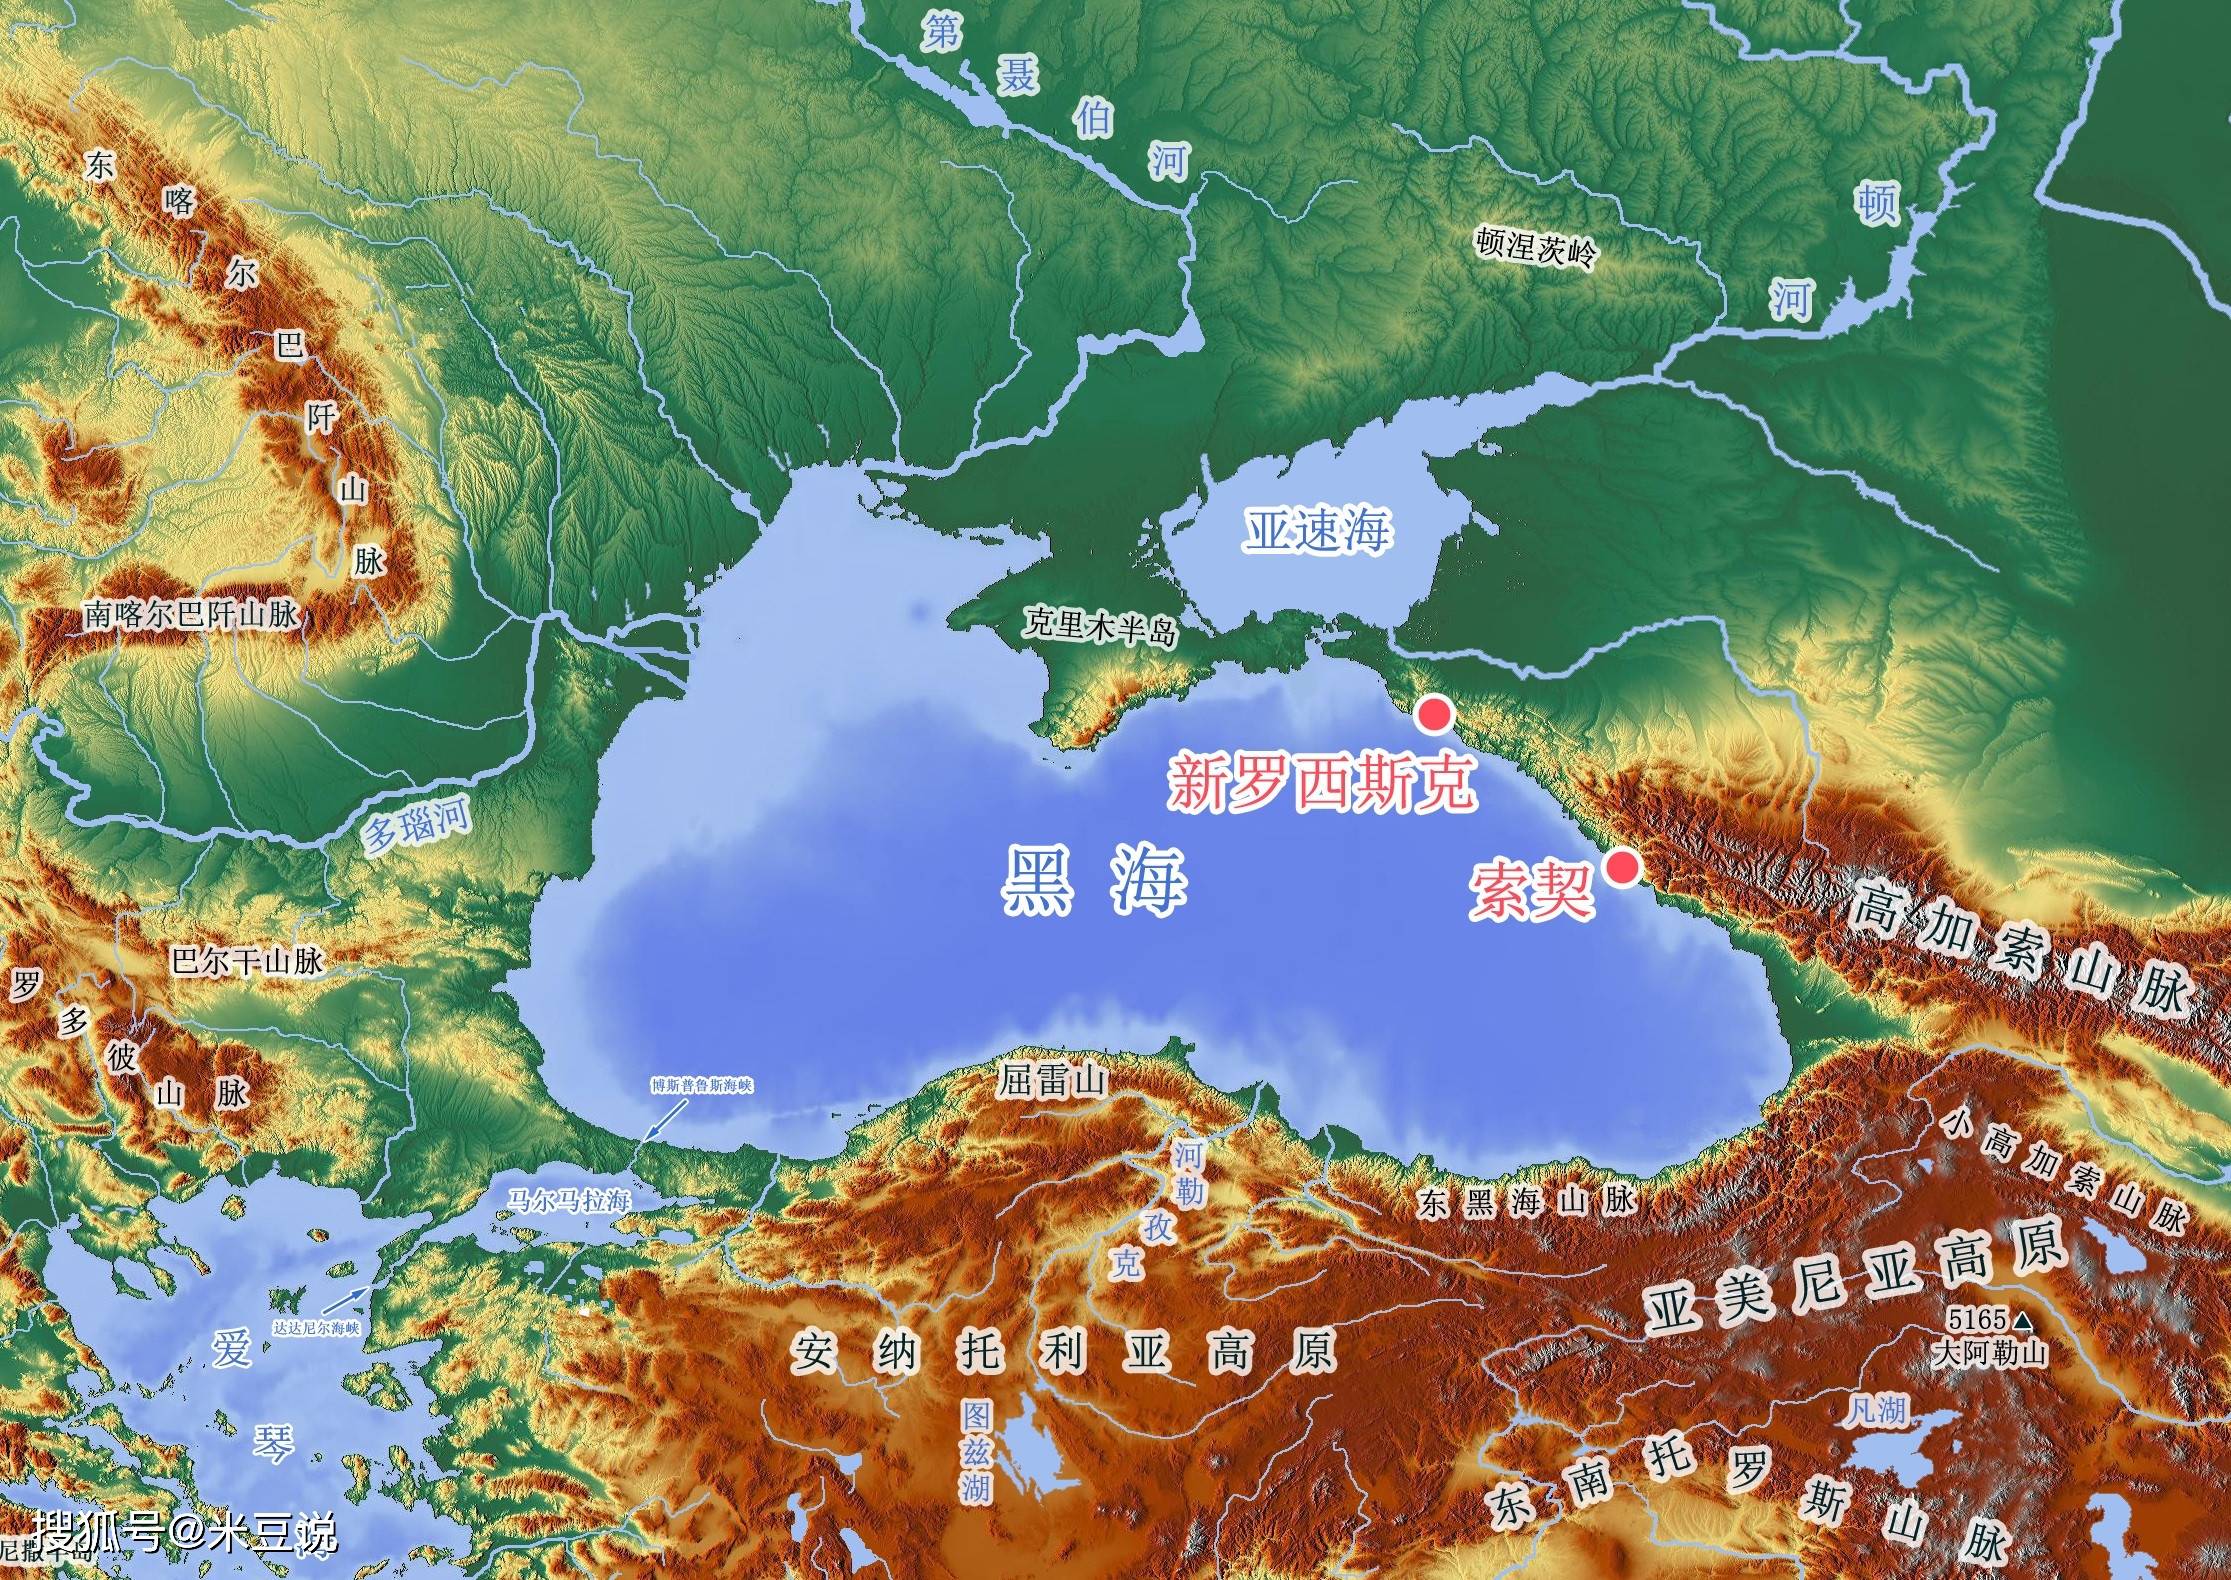 土耳其海峡:土耳其的最强底牌,以博斯普鲁斯之名拱卫伊斯坦布尔